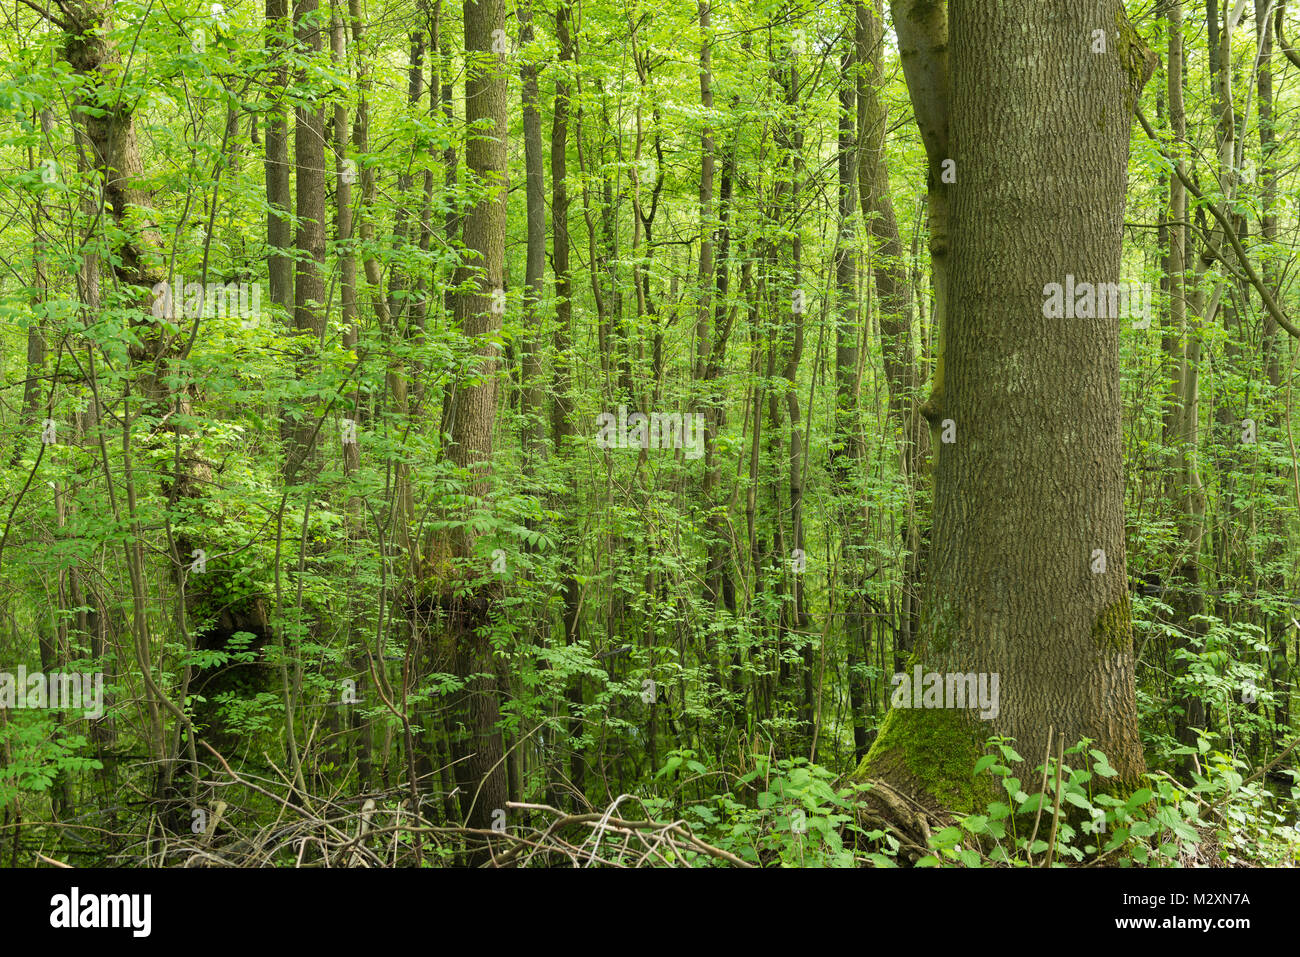 Germany, Baden-Wurttemberg, Weingartener Moor Naturschutzgebiet, Spring in Weingartener moor Stock Photo